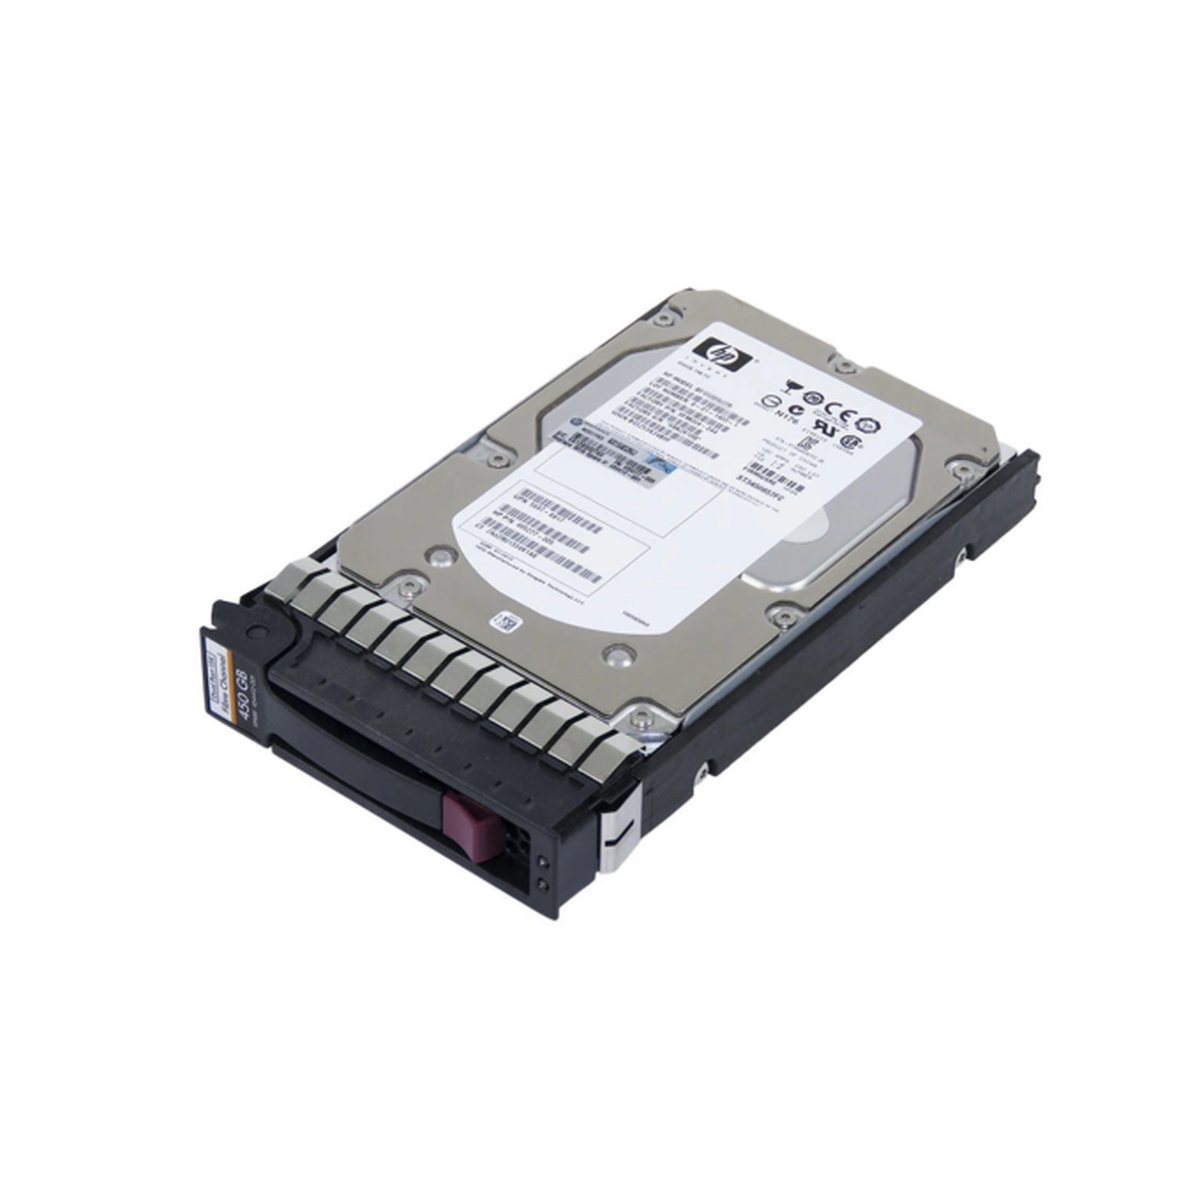 DYSK HP 450GB 15K FC BF450DA483 404396-003